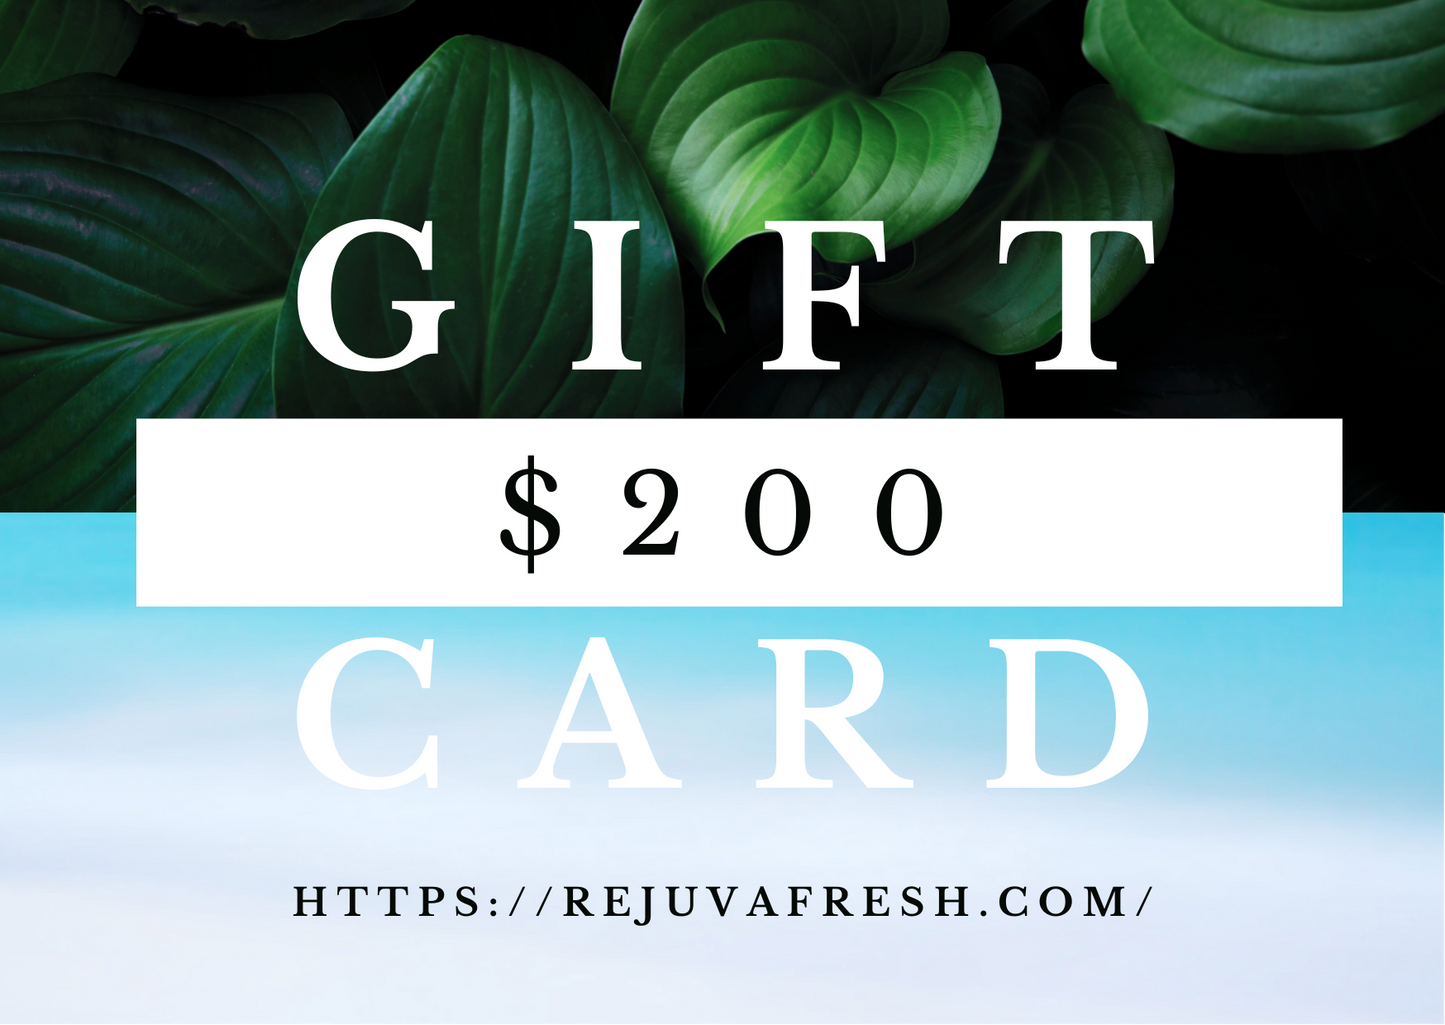 Two hundred dollars Gift Card for Rejuva Fresh website, green leaves, blue water